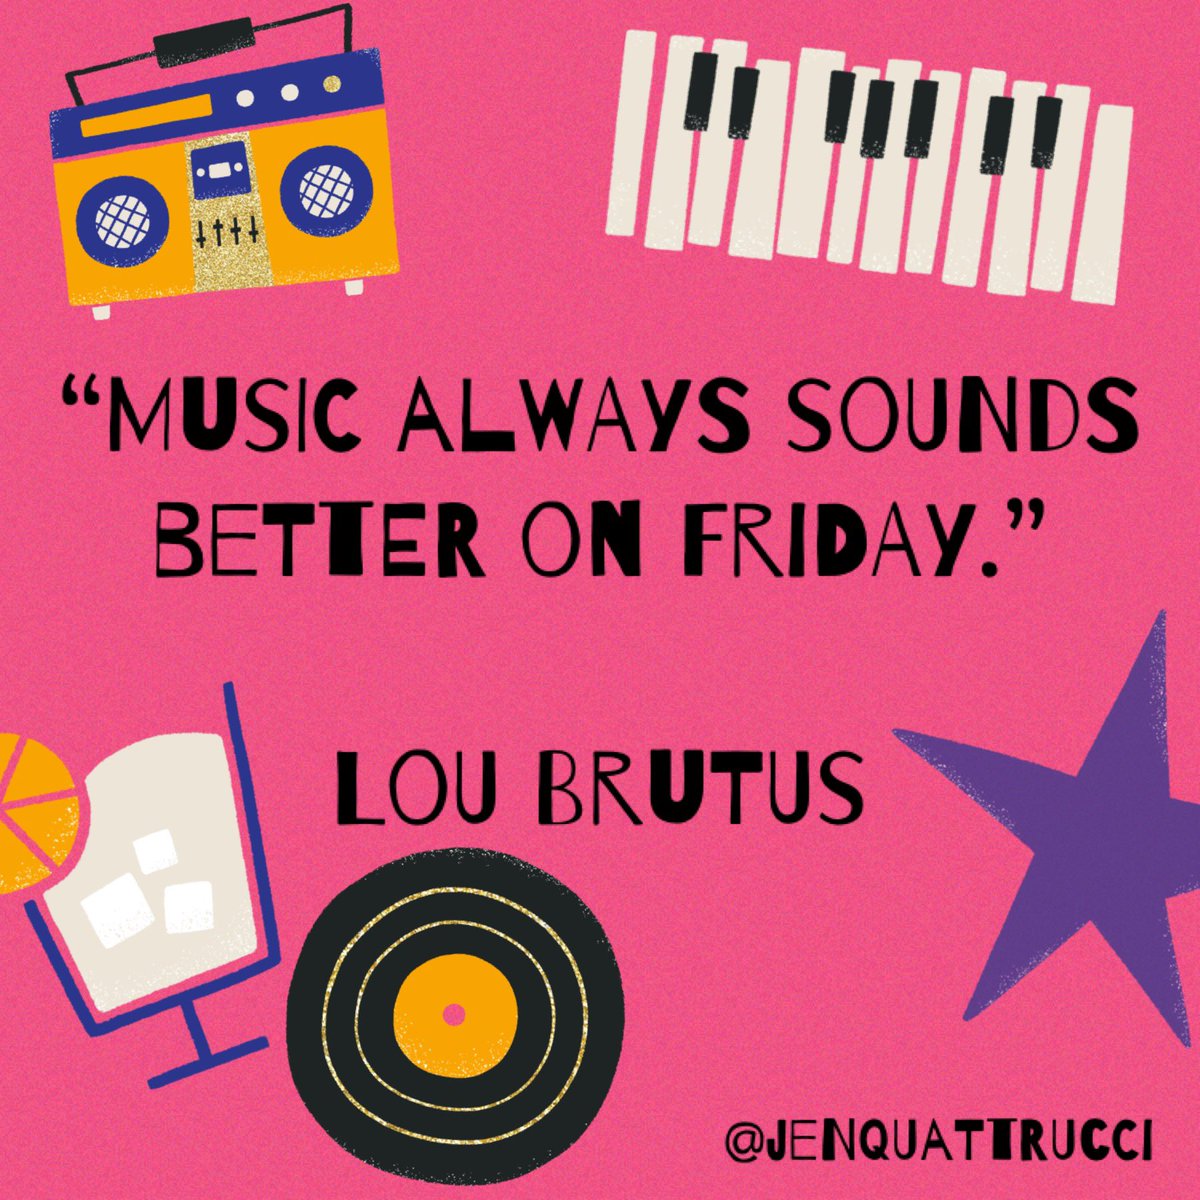 Good morning 💕 Happy Friday! 🎶🎶🎶 #quoteoftheday #friday #music #fridayvibes #celebrateeverything